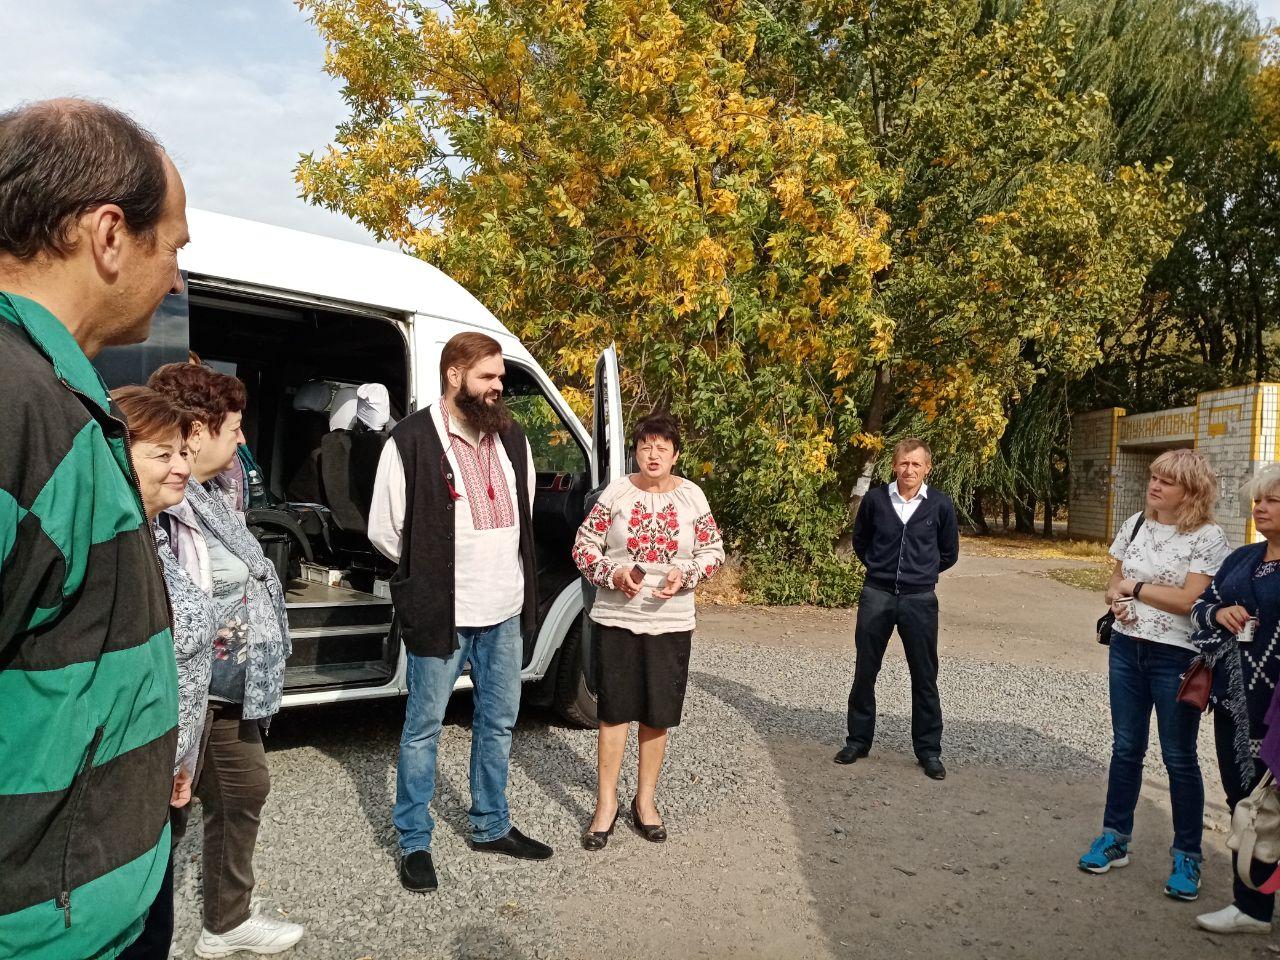 27 вересня відбулася друга  робоча поїздка до ОТГ області менеджерів з туризму в громадах, яка була організована Центром підтримки малого і середнього бізнесу (ЦП МСБ).